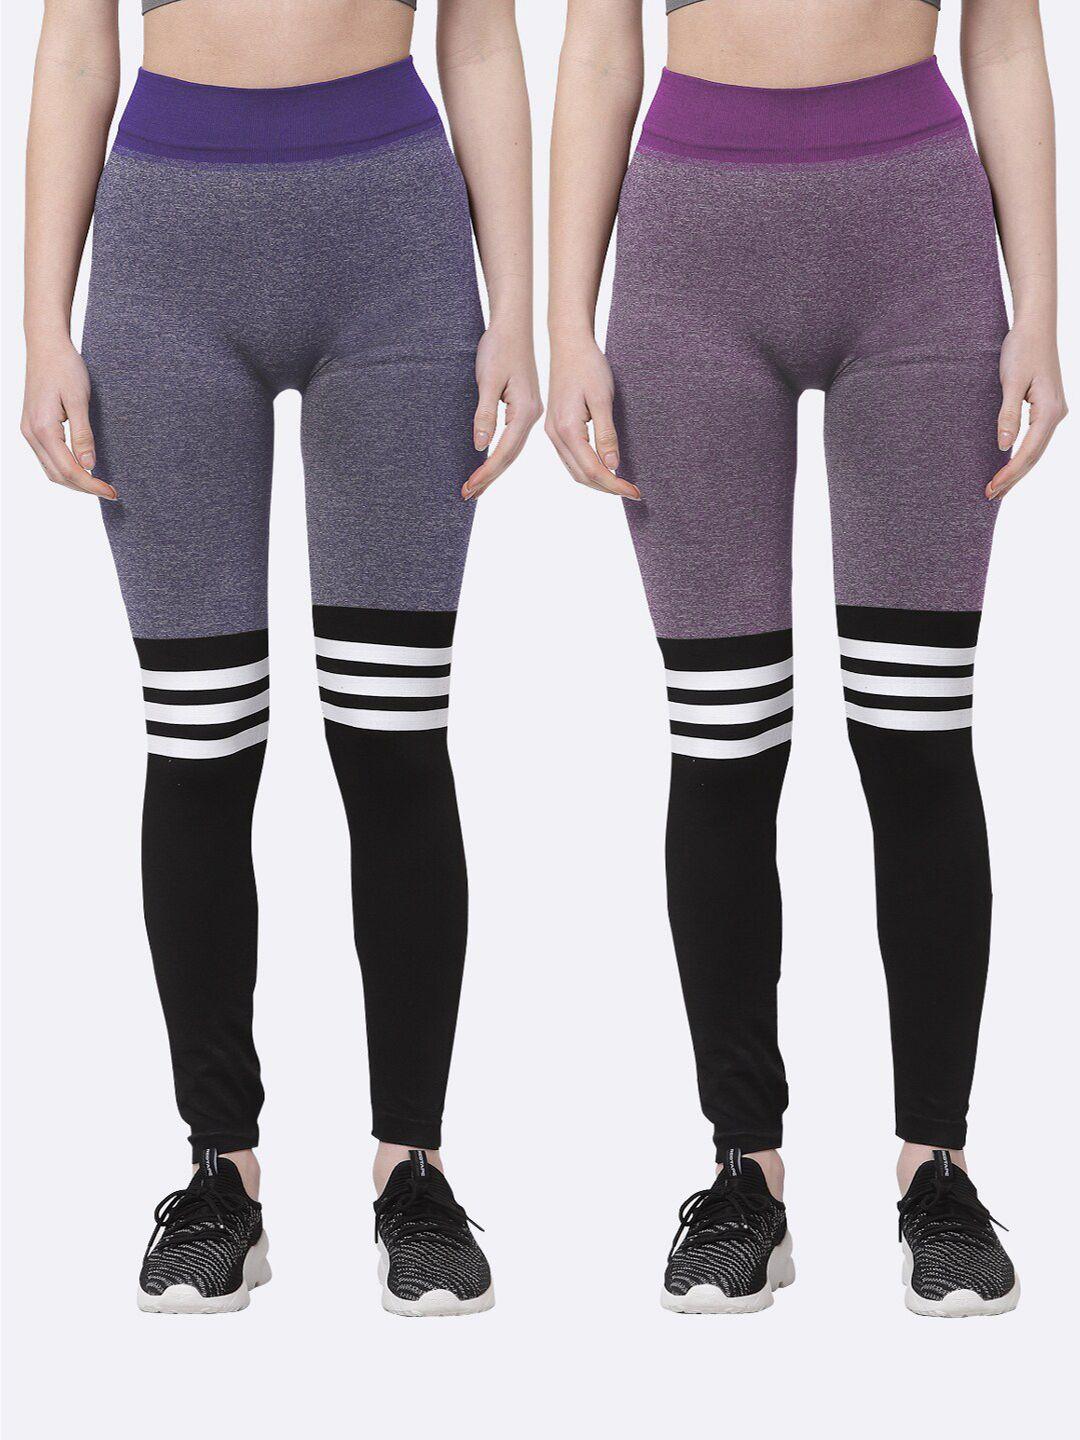 klotthe-women-pack-of-2-purple-&-pink-printed-skinny-fit-jeggings